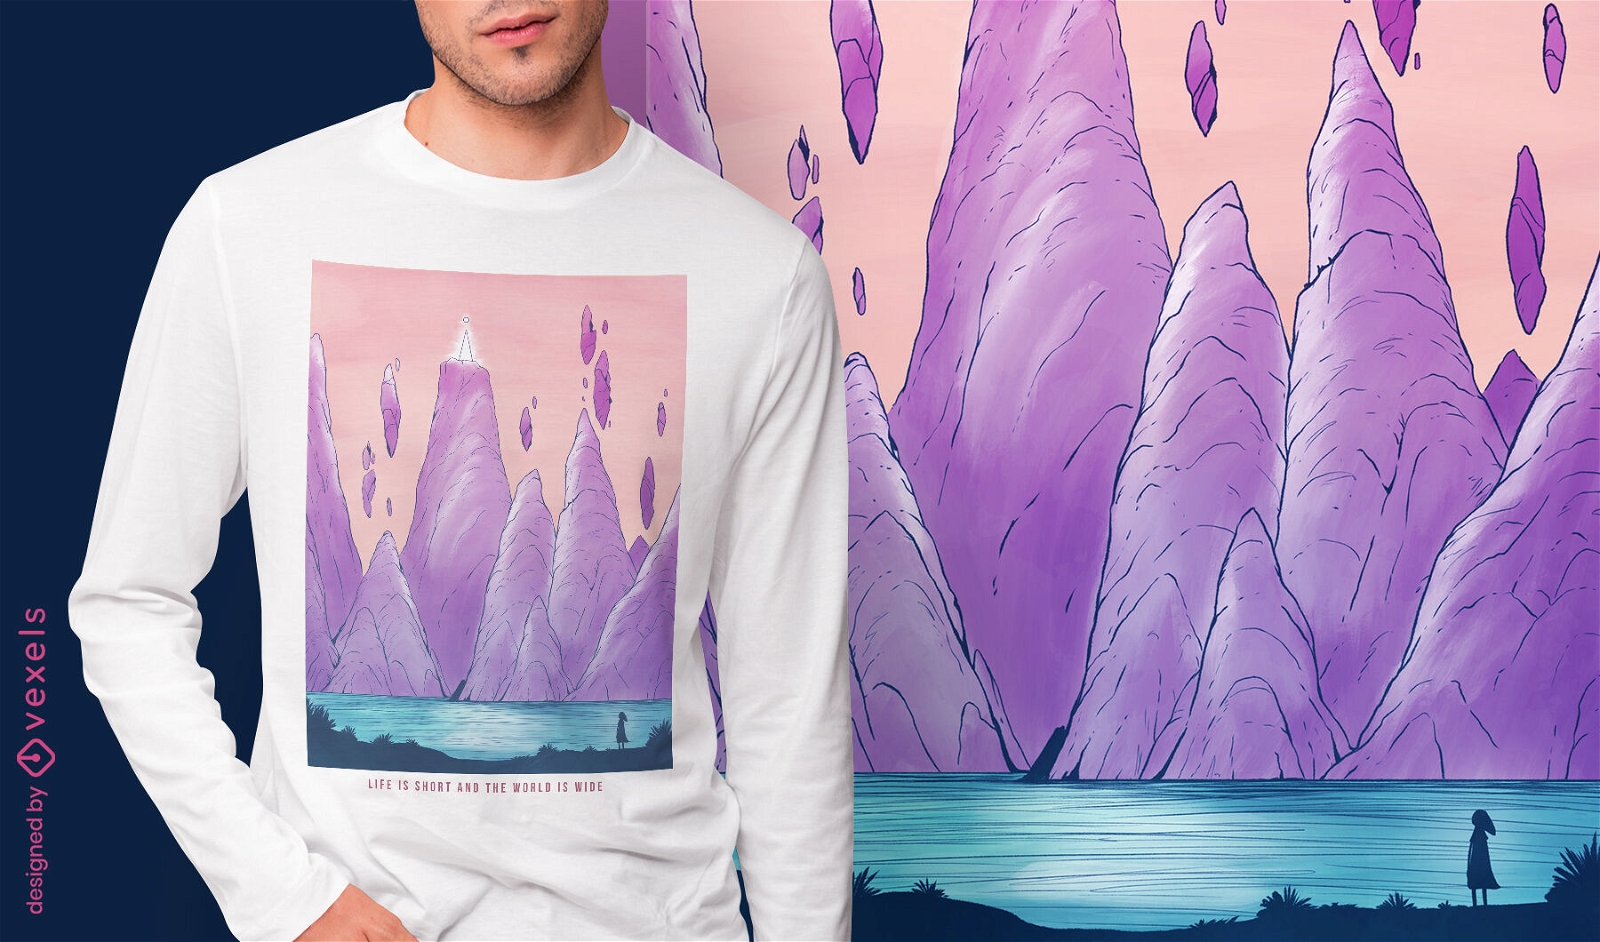 Dise?o de camiseta de paisaje de fantas?a de rocas flotantes